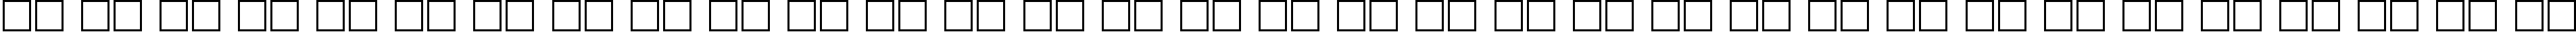 Пример написания русского алфавита шрифтом Hermes